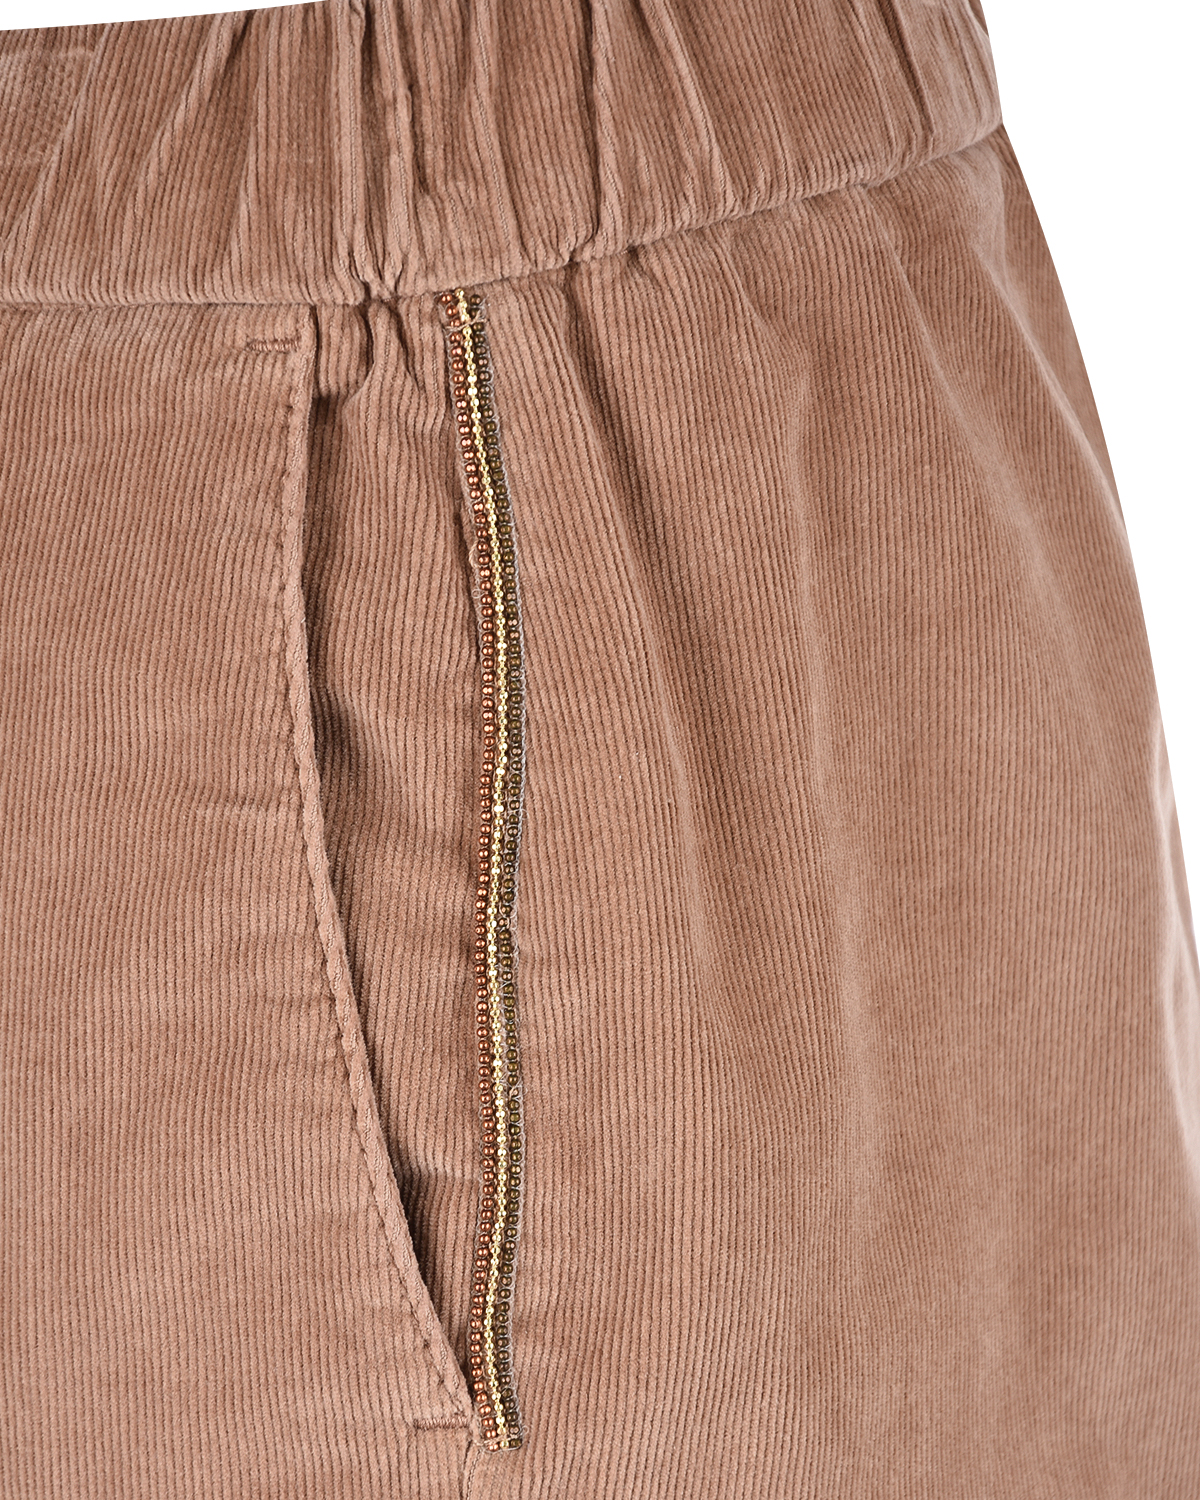 Коричневые брюки из вельвета Panicale, размер 40, цвет коричневый - фото 7